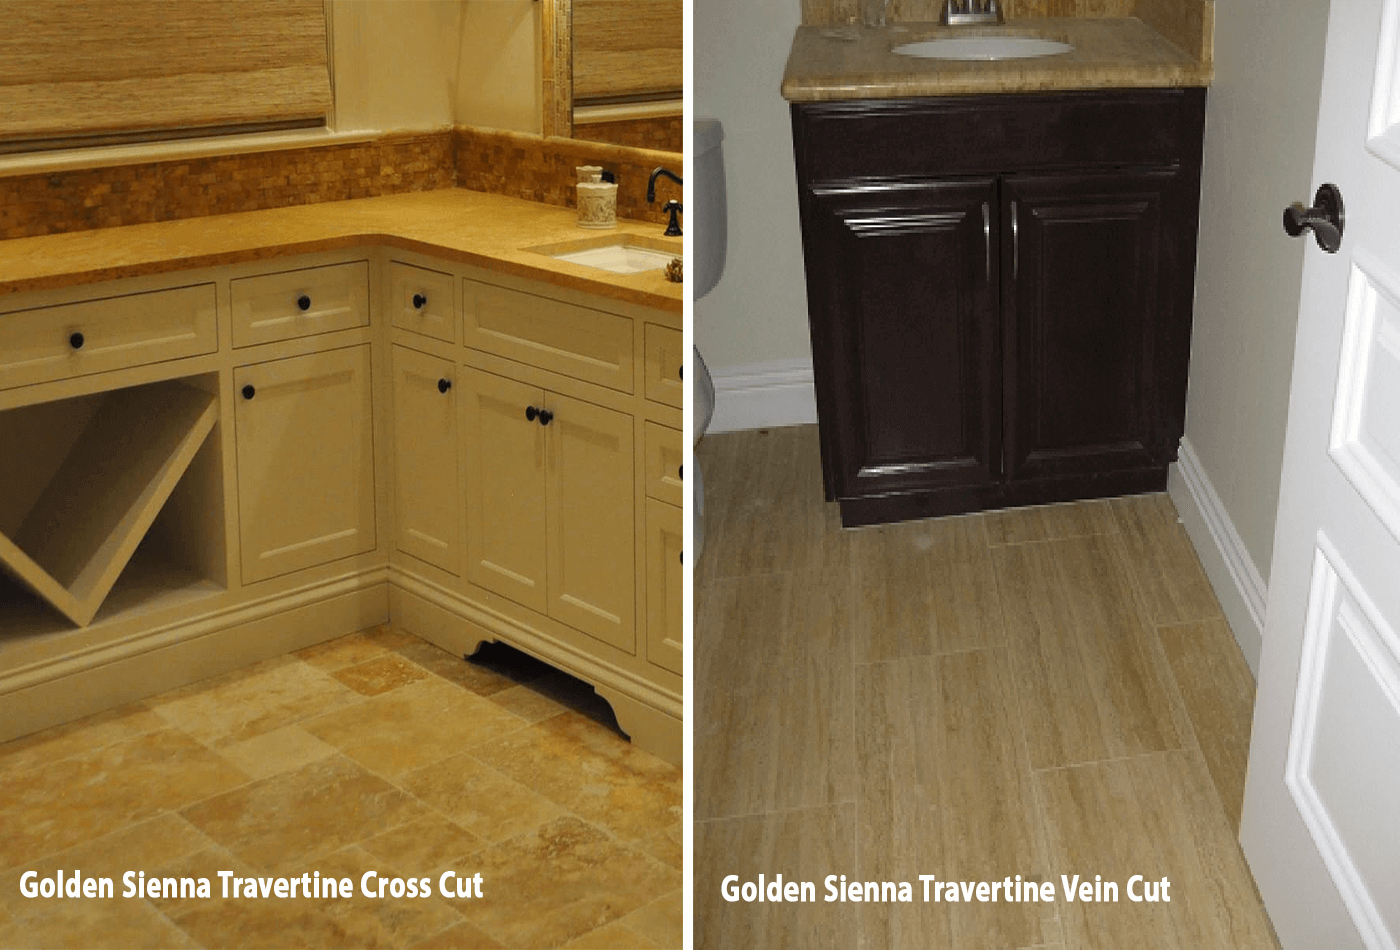 Let’s Compare Golden Sienna Travertine's Cross Cut & Vein Cut Slab